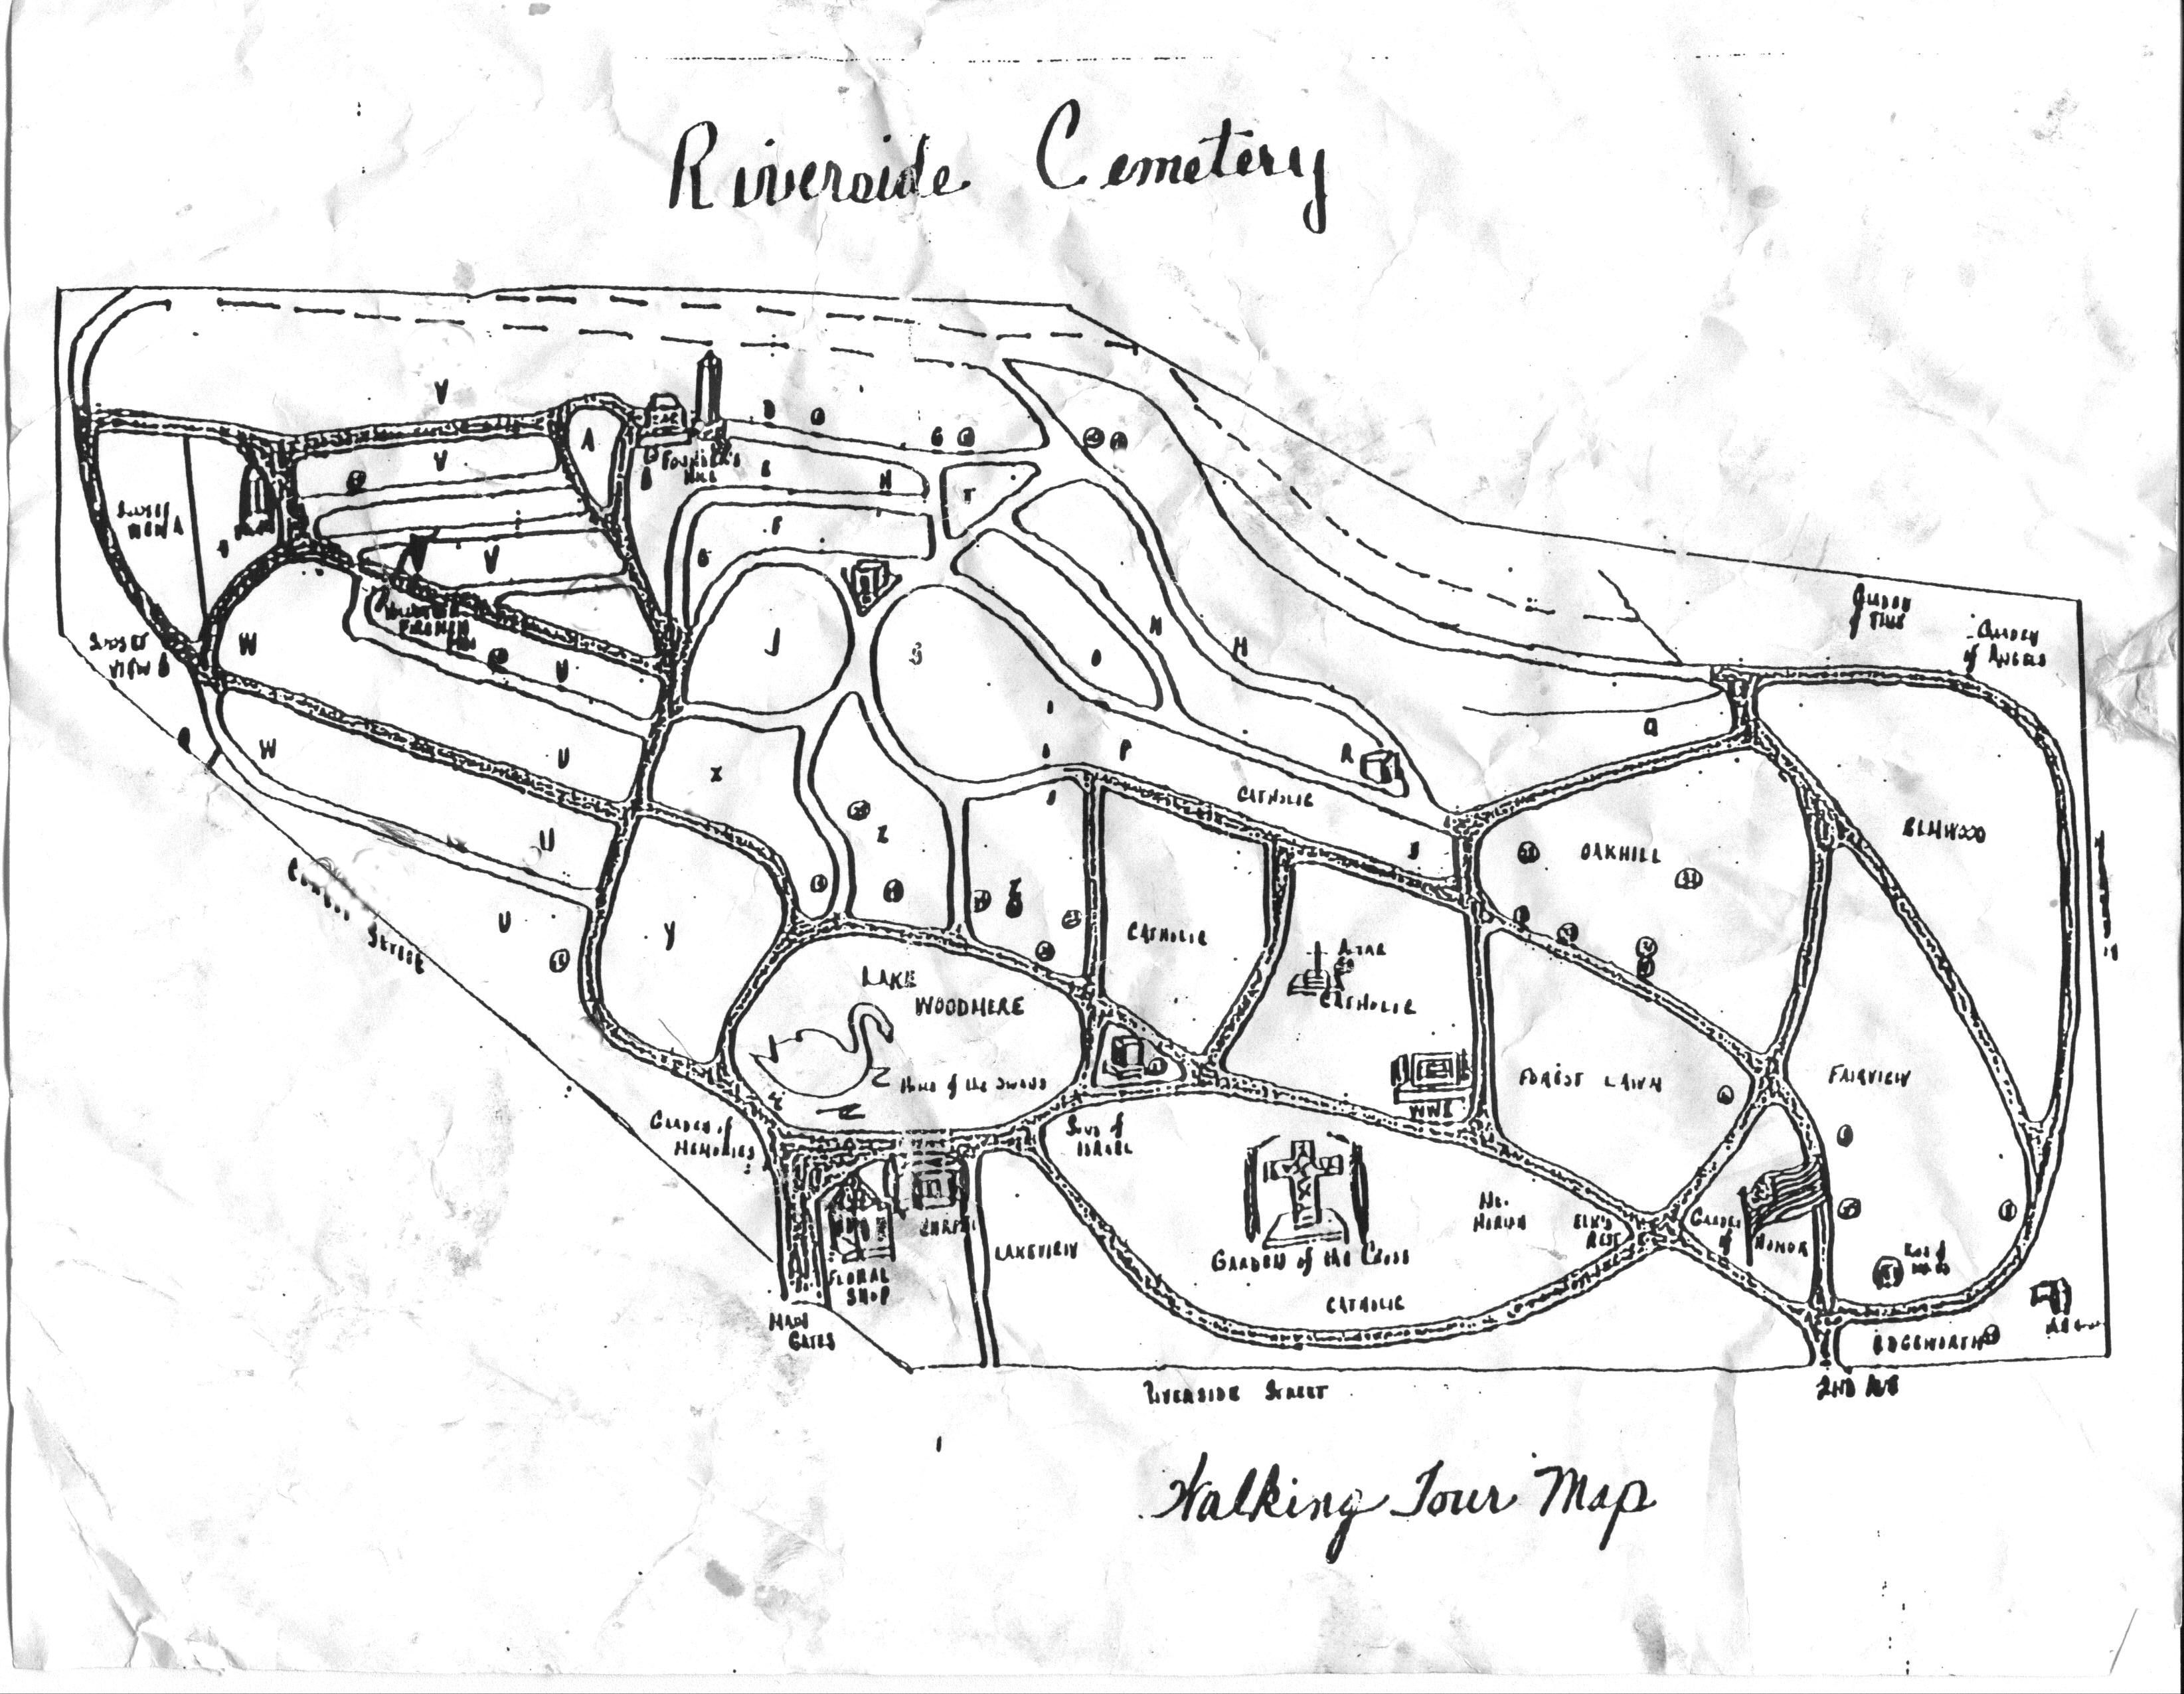 Riversidemap 